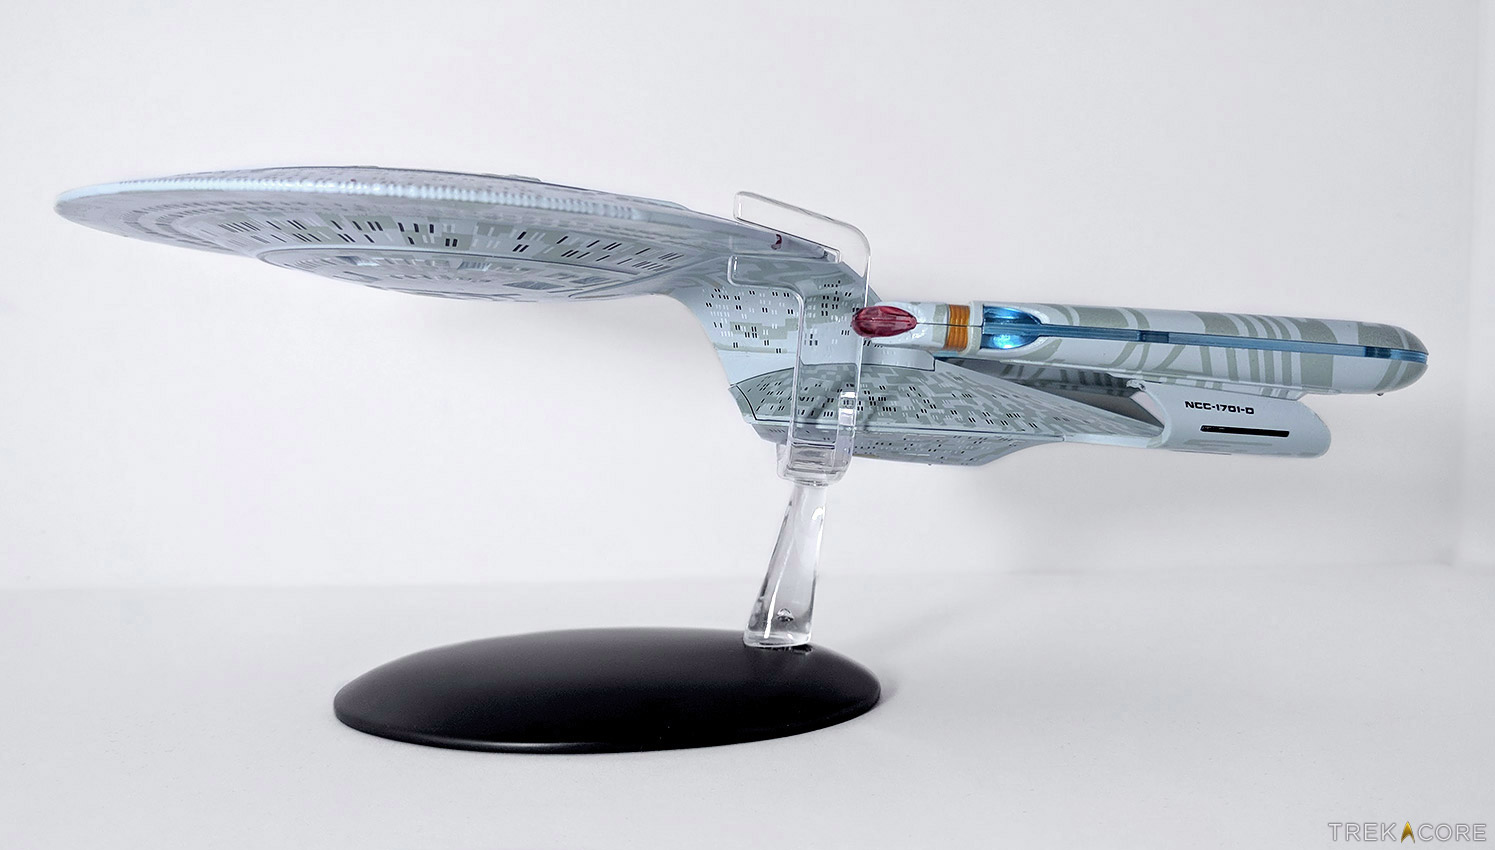 Star Trek Starships USS ENTERPRISE NCC 1701-D Model Box Edition Eaglemoss #1 